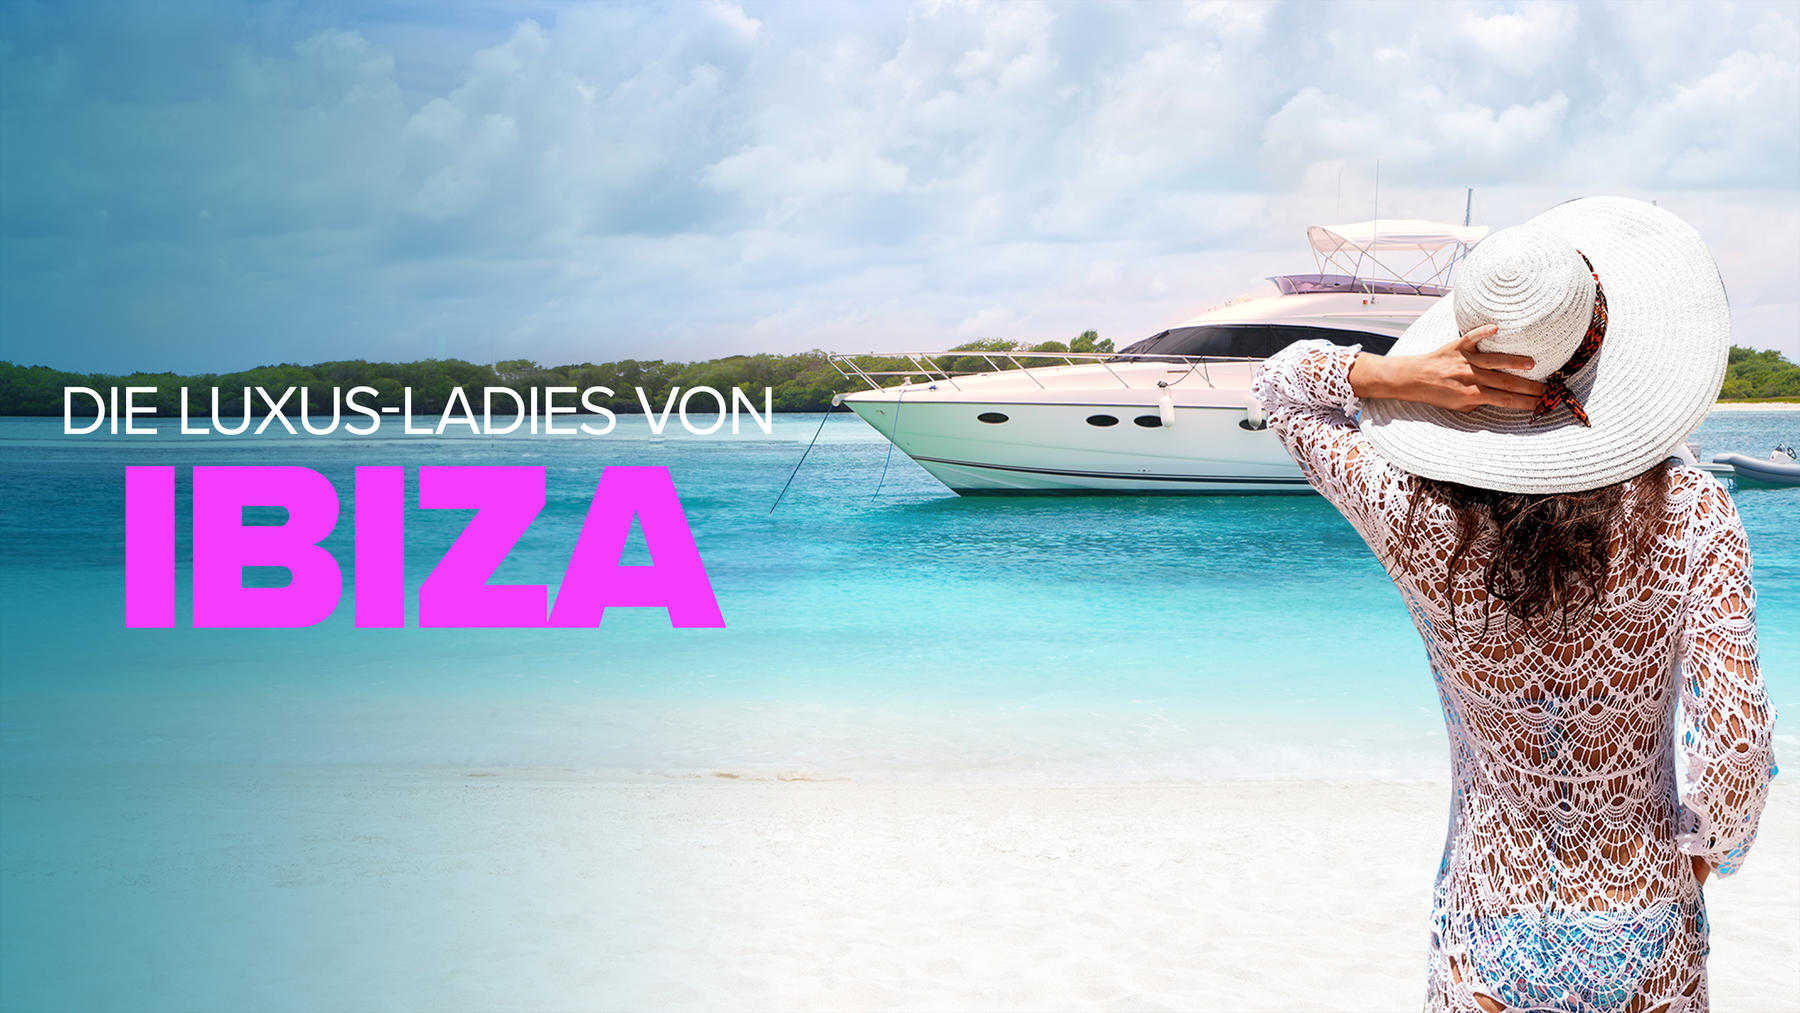 Die Luxus-Ladies von Ibiza